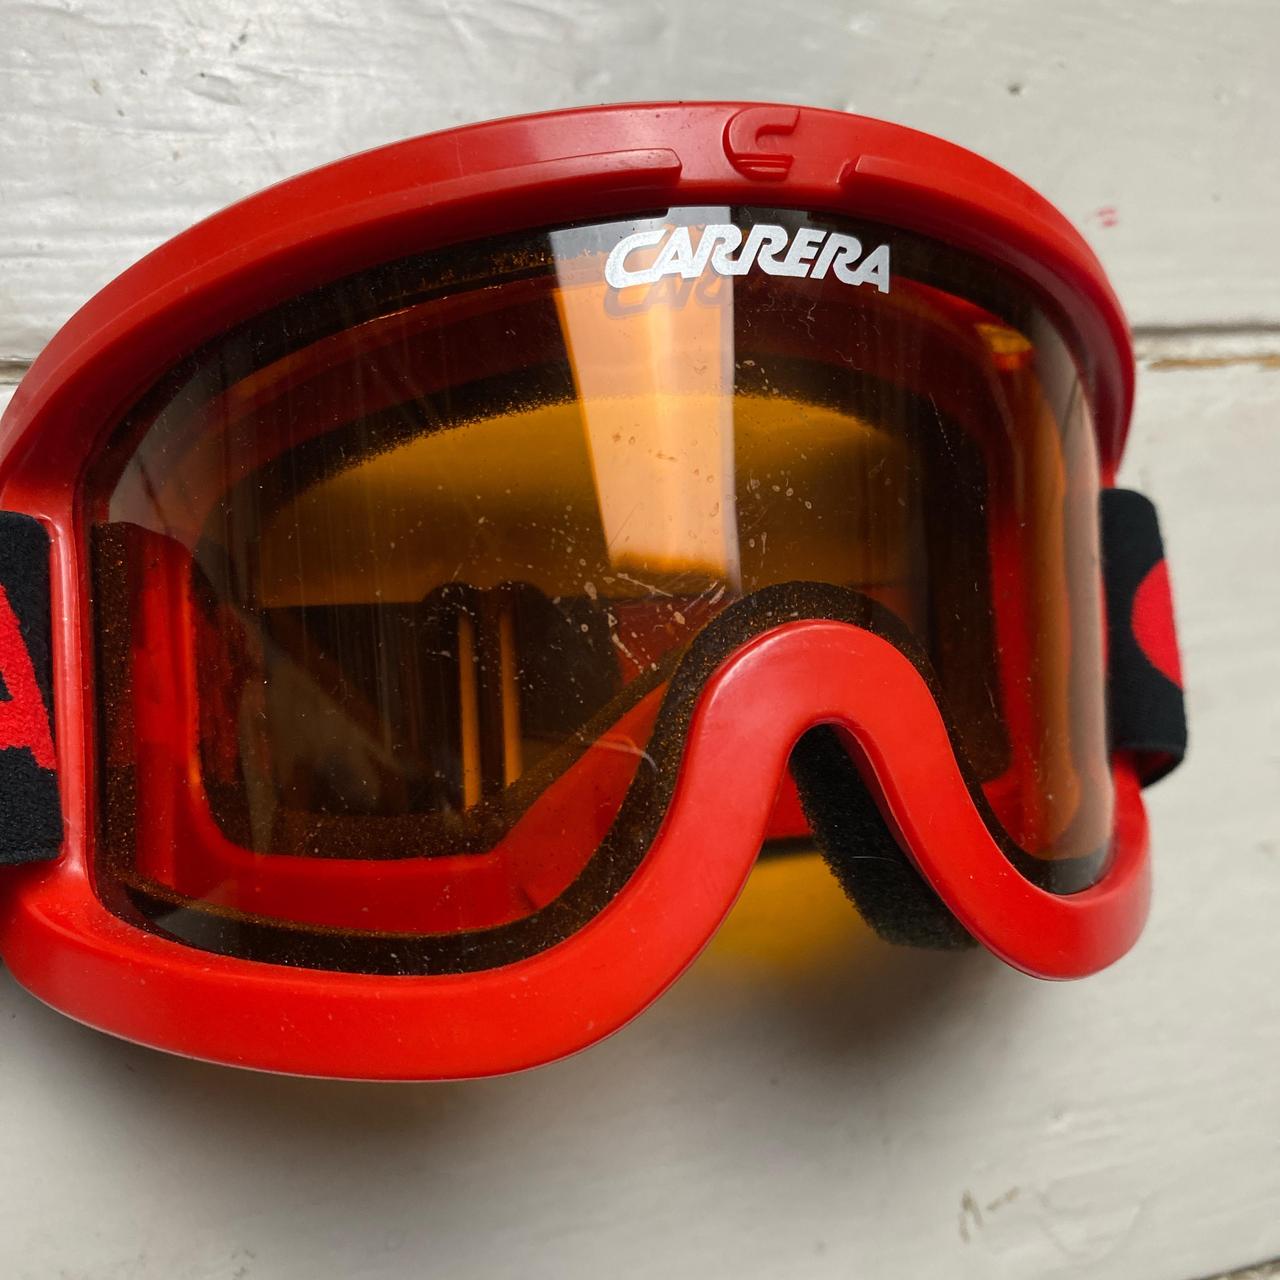 Carrera Ski Snowboarding Goggles